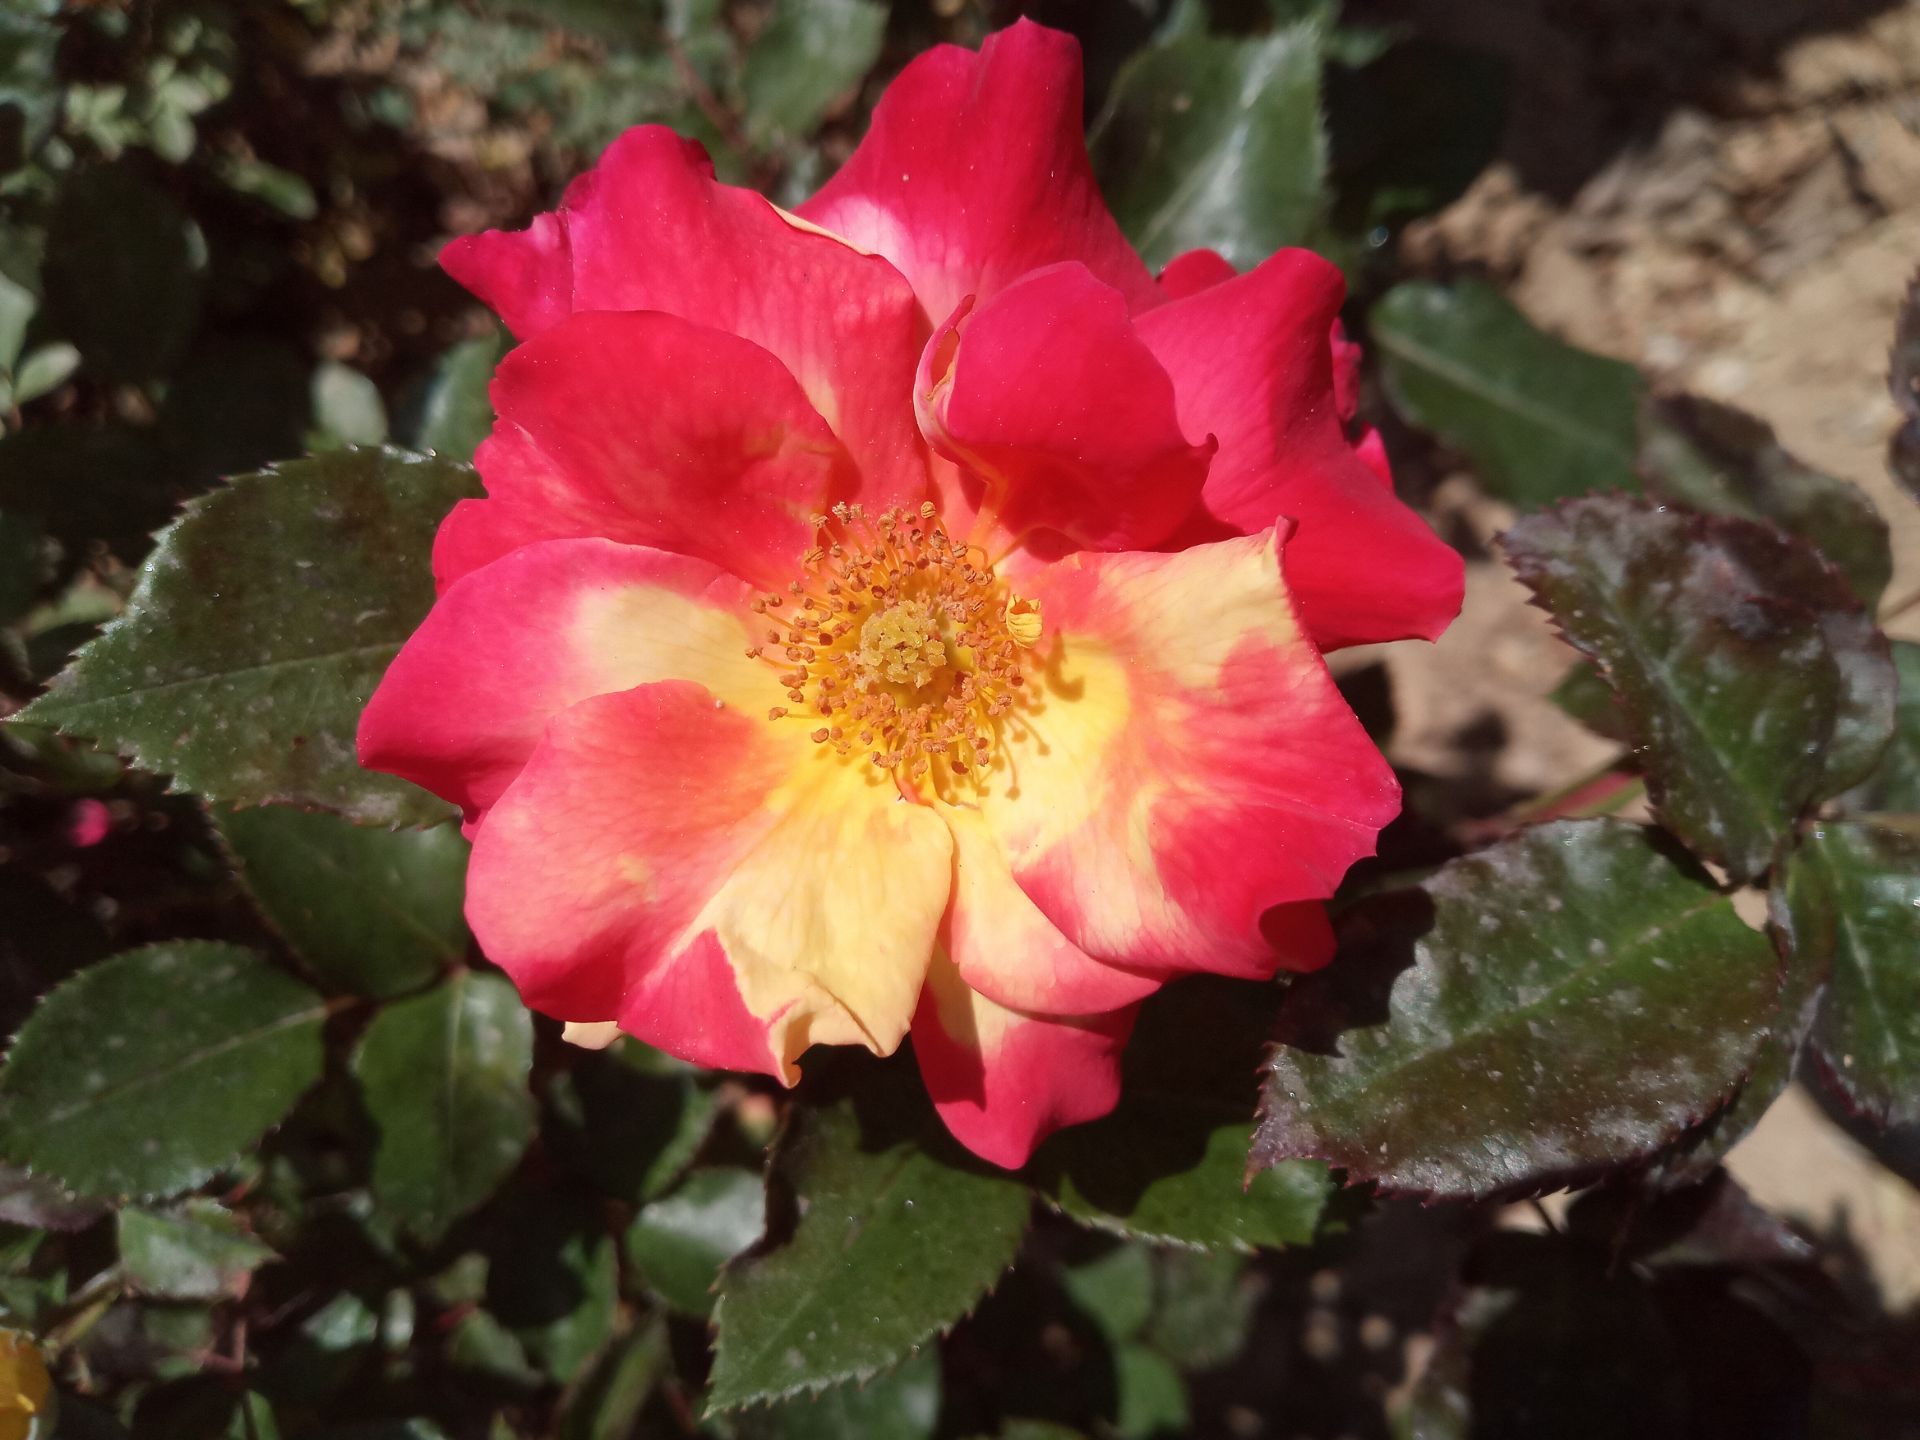 نمونه عکس گوشی انرجایزر U710S در روشنایی روز - تصویر یک گل قرمز رنگ